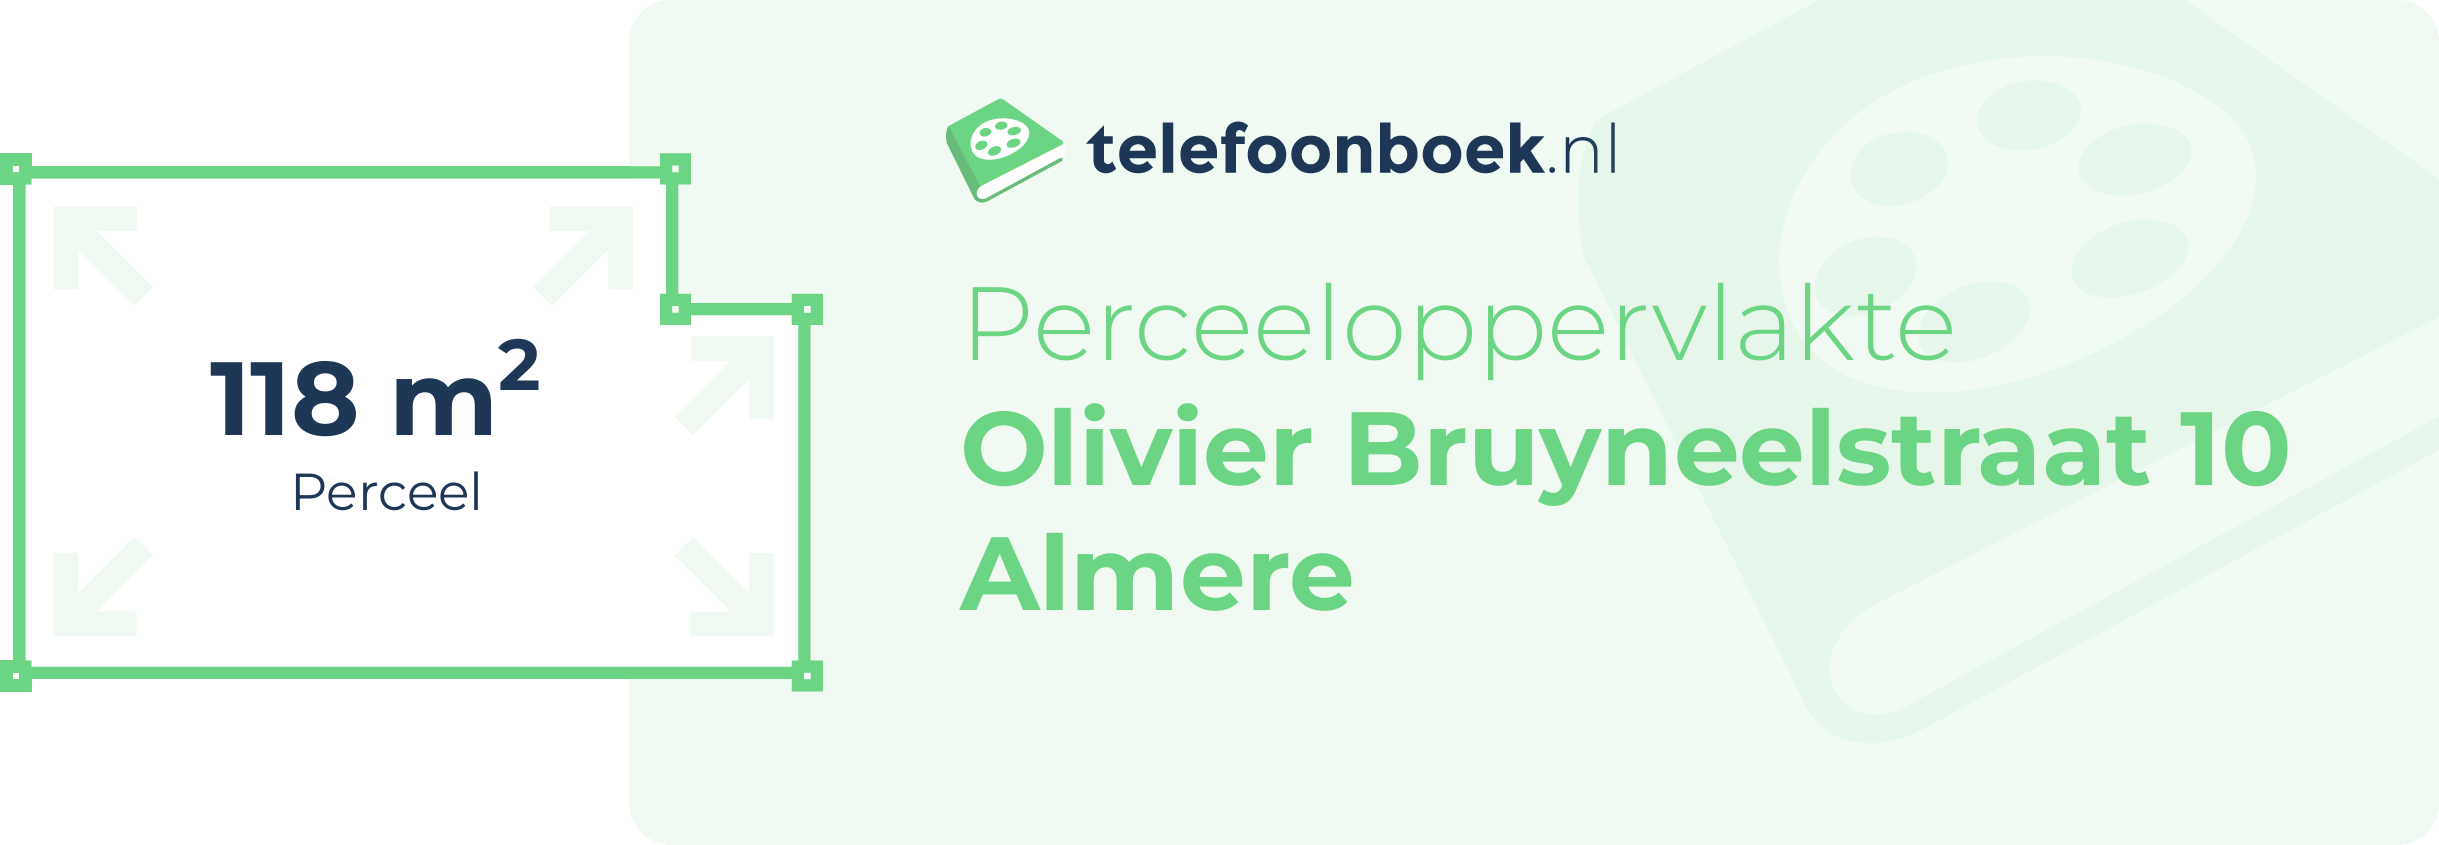 Perceeloppervlakte Olivier Bruyneelstraat 10 Almere